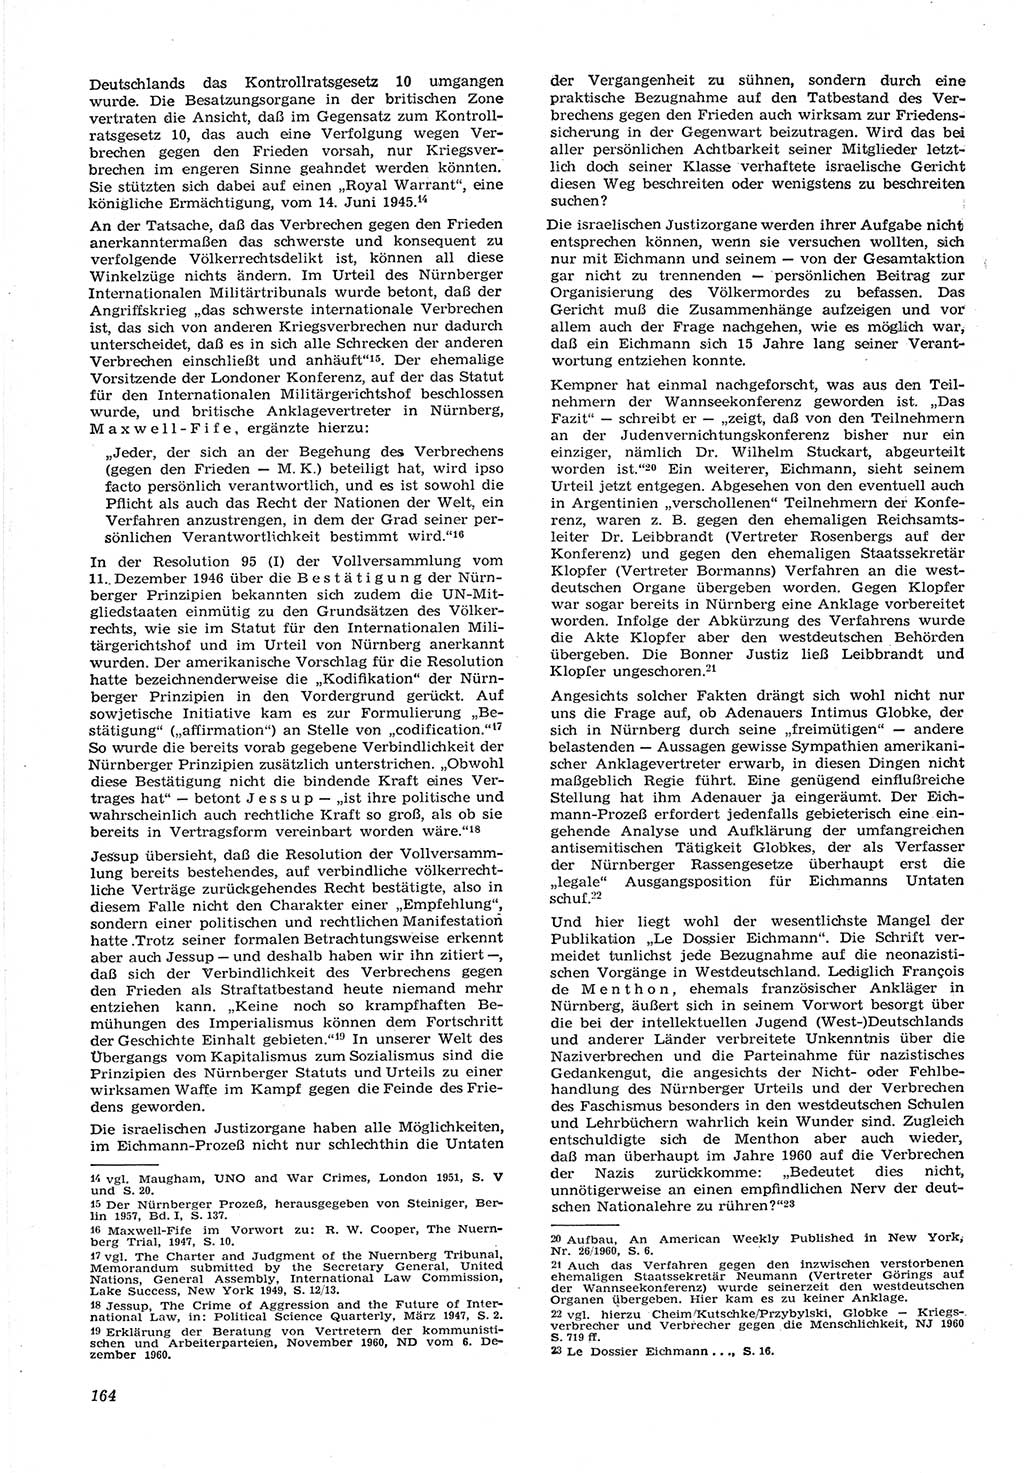 Neue Justiz (NJ), Zeitschrift für Recht und Rechtswissenschaft [Deutsche Demokratische Republik (DDR)], 15. Jahrgang 1961, Seite 164 (NJ DDR 1961, S. 164)